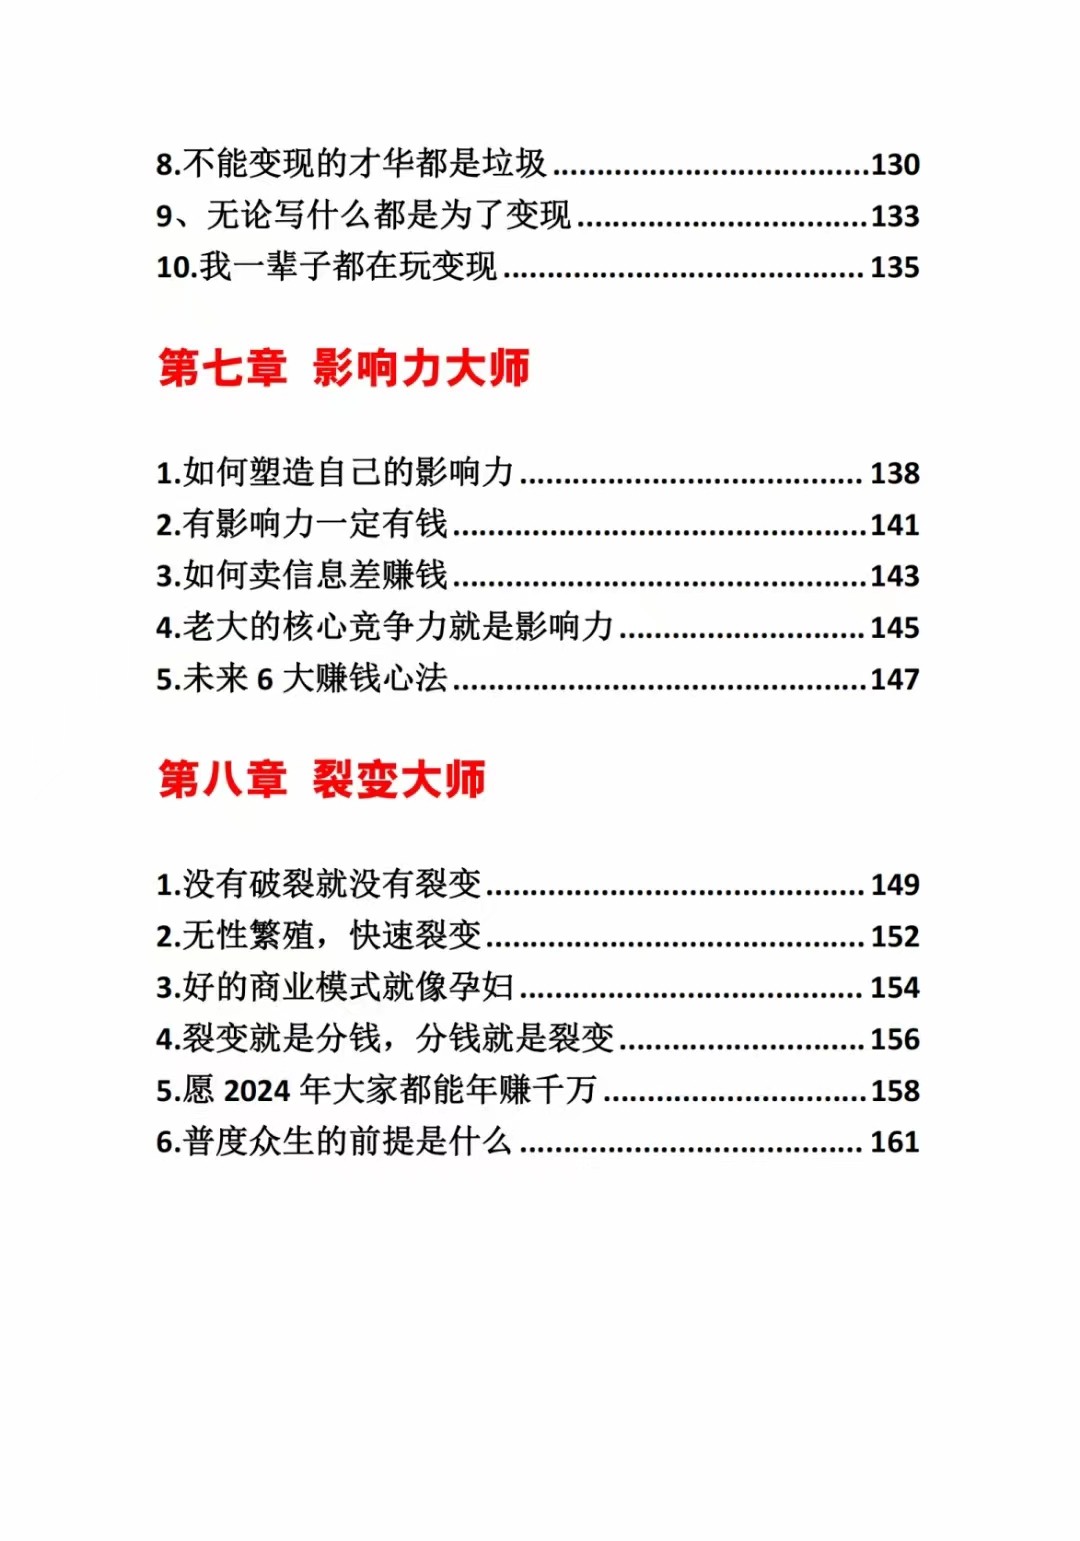 《营销大师如何割韭菜》禁止外传的大师绝学电子书3393 作者:福缘创业网 帖子ID:106493